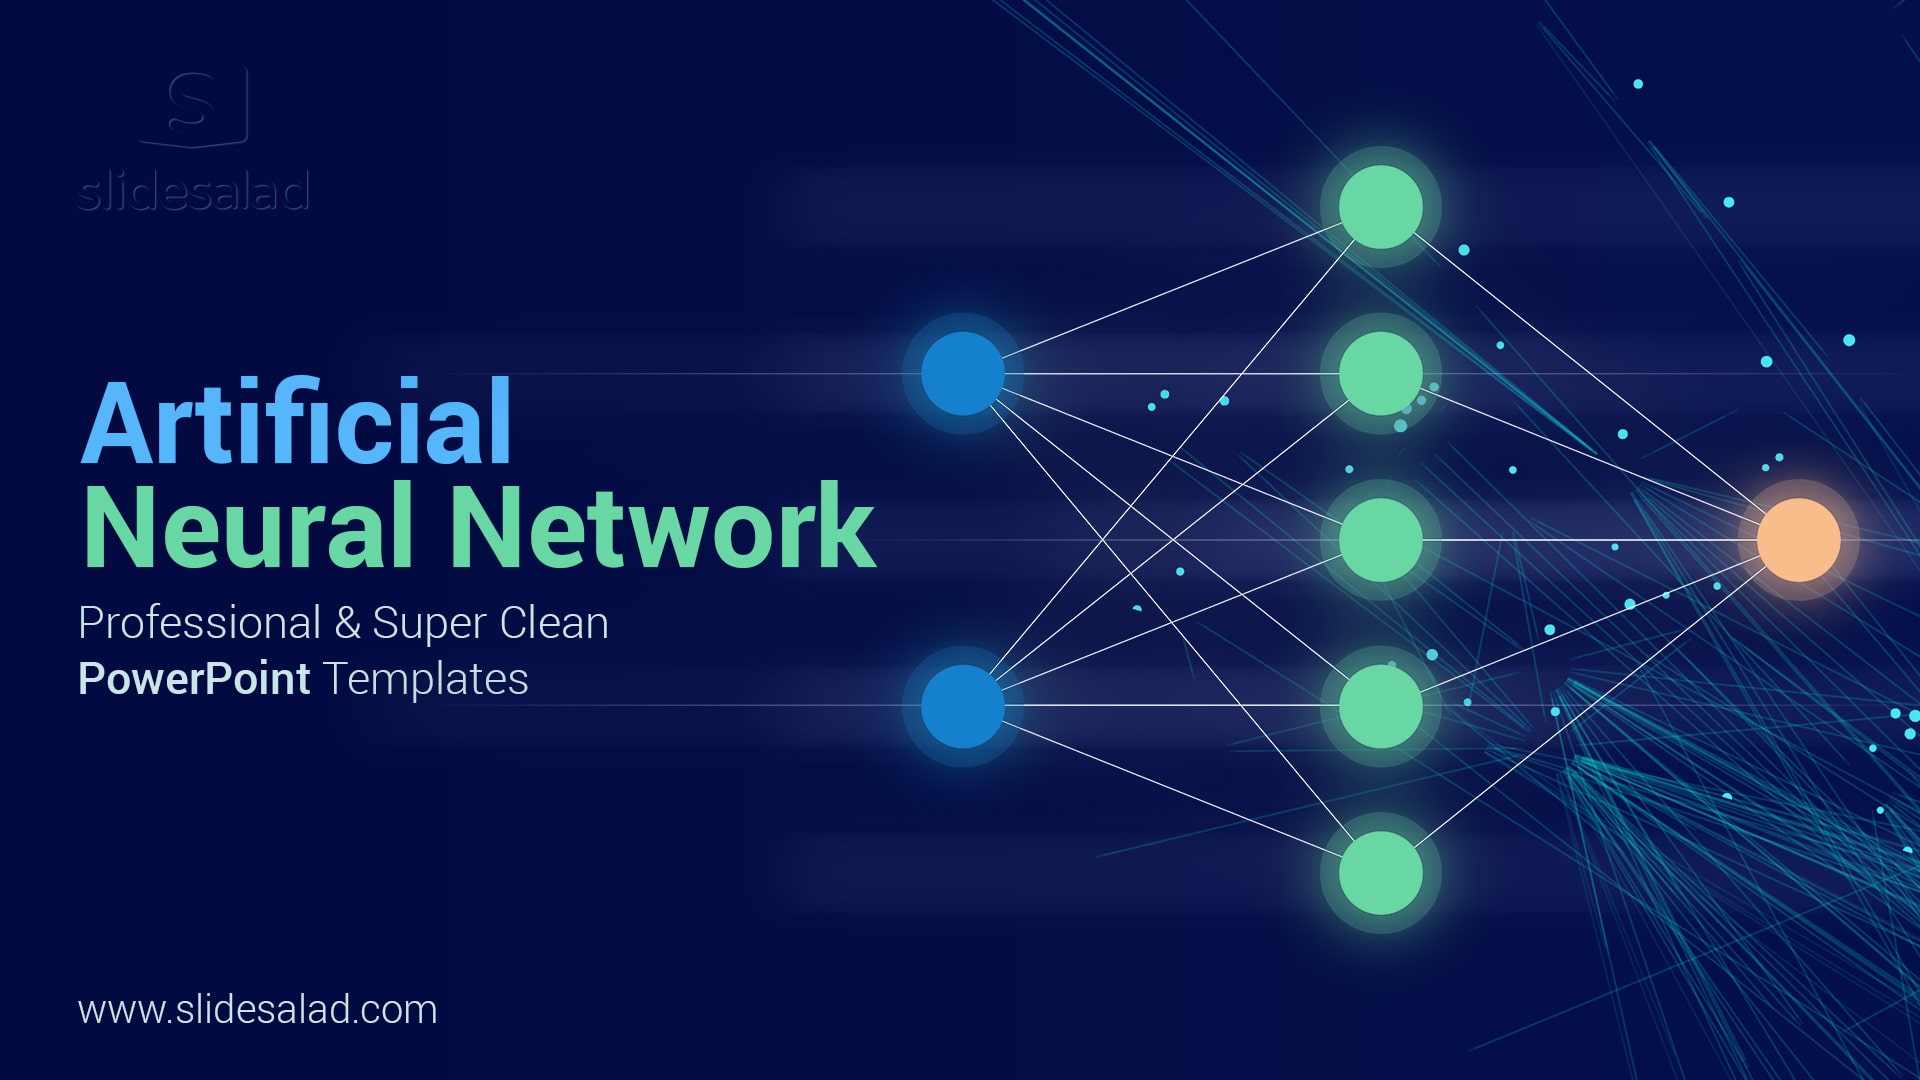 Artificial Neural Network (ANN) PowerPoint Template Designs